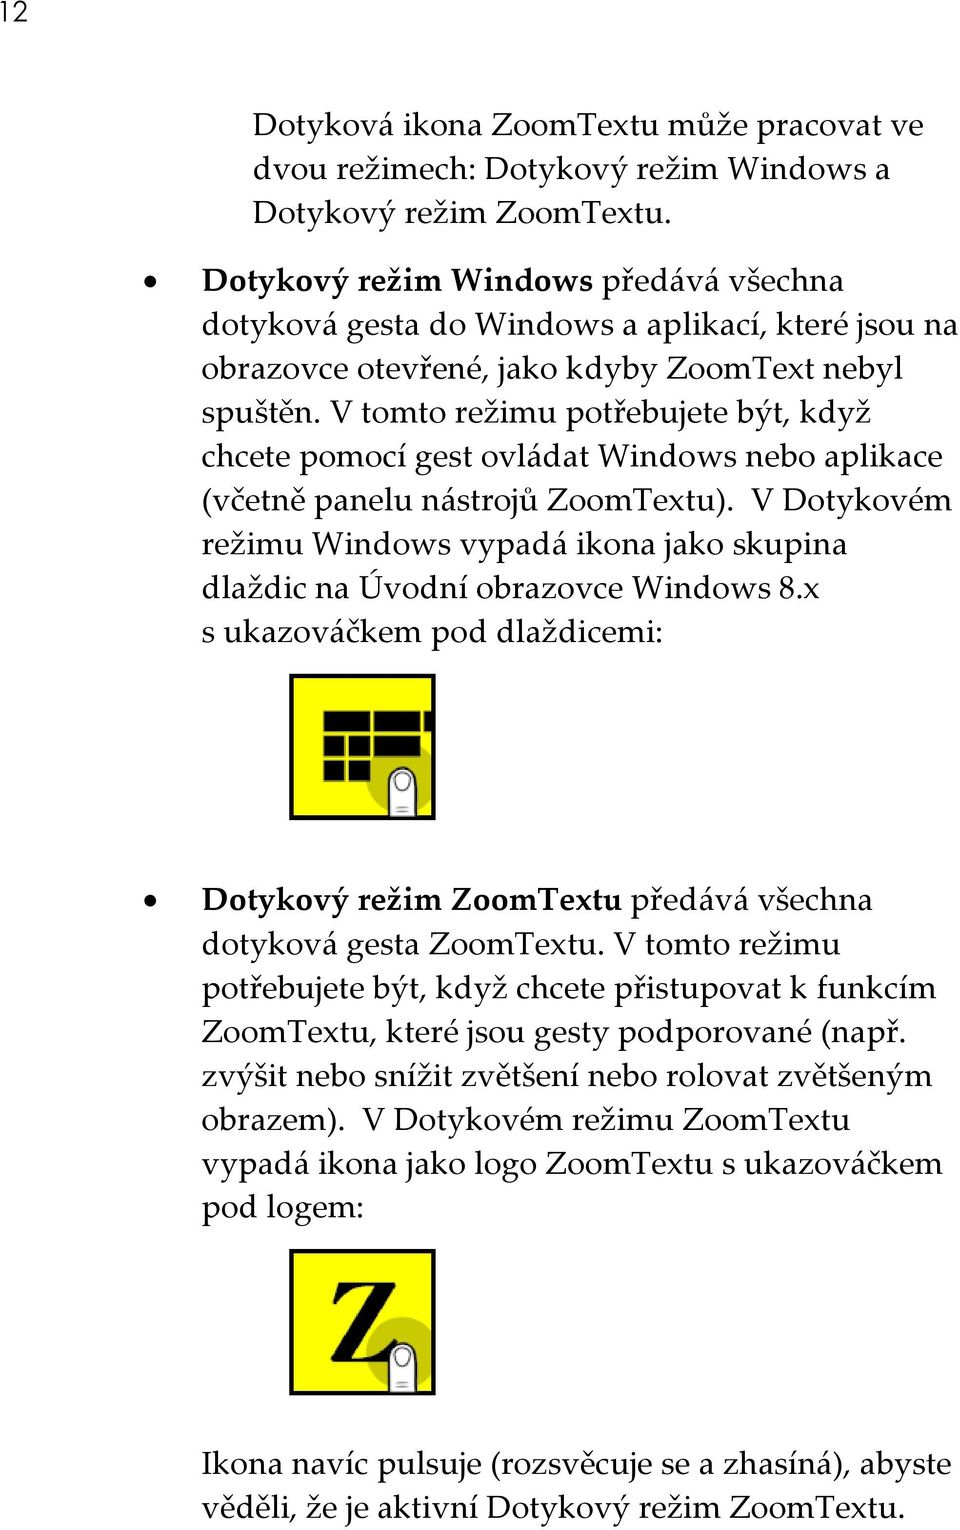 V tomto režimu potřebujete být, když chcete pomocí gest ovládat Windows nebo aplikace (včetně panelu nástrojů ZoomTextu).